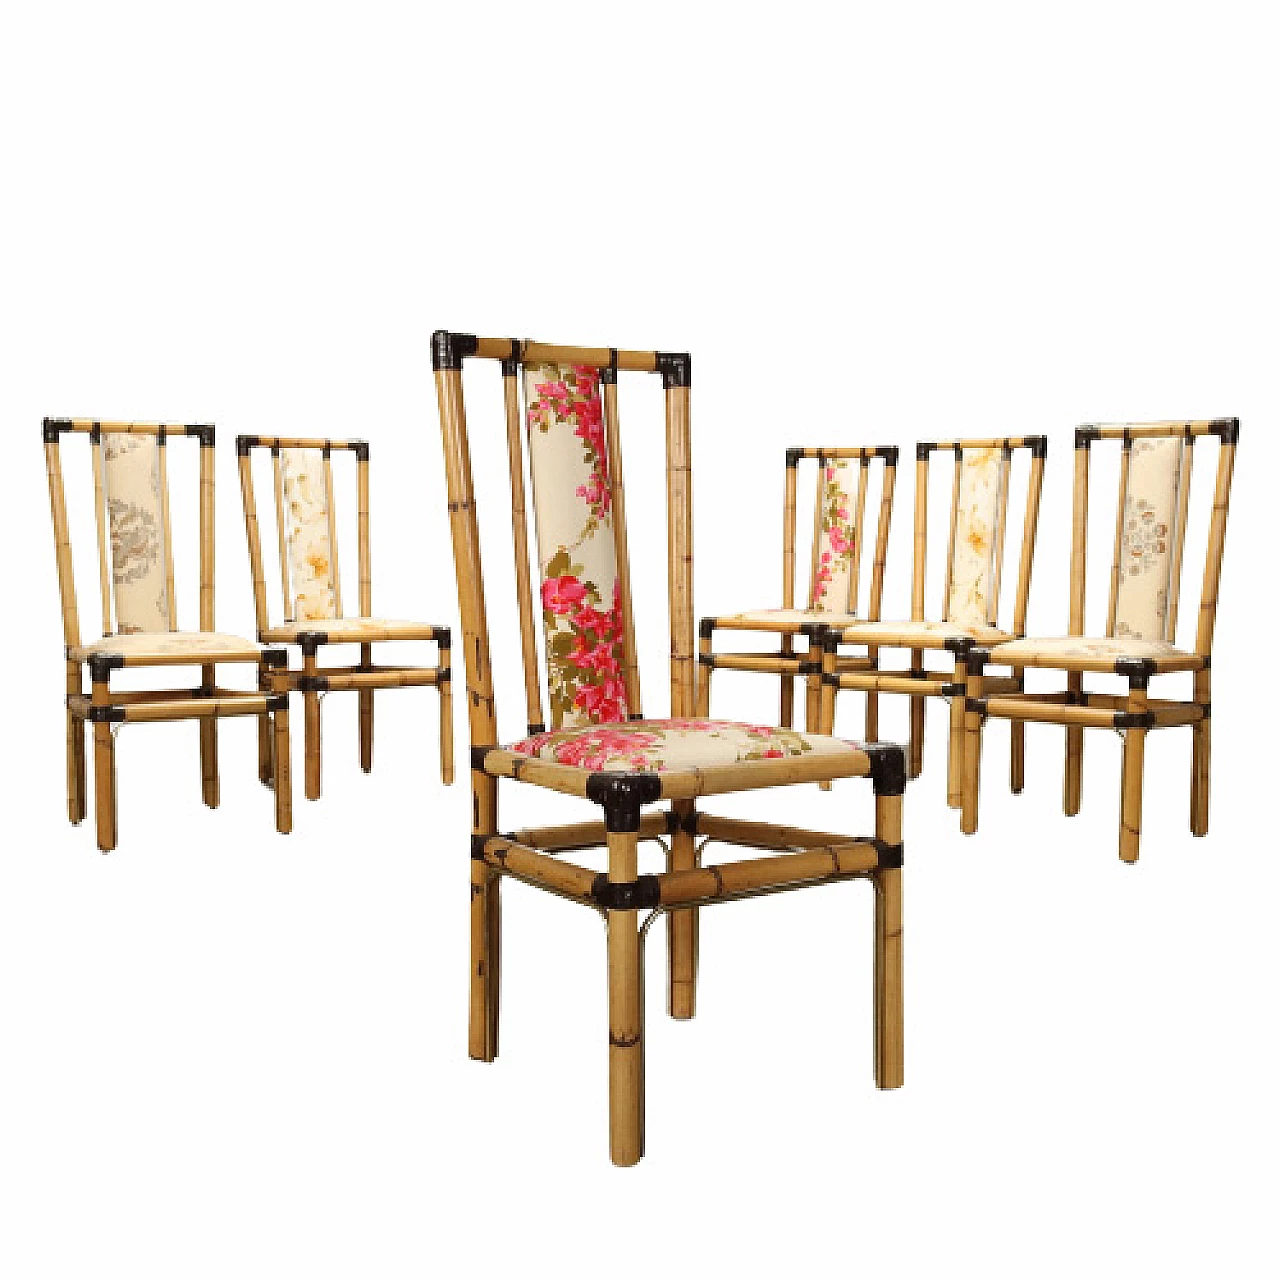 6 Bamboo and fabric chairs by Fabrizio Smania for Studio Smania Interni, 1980s 1